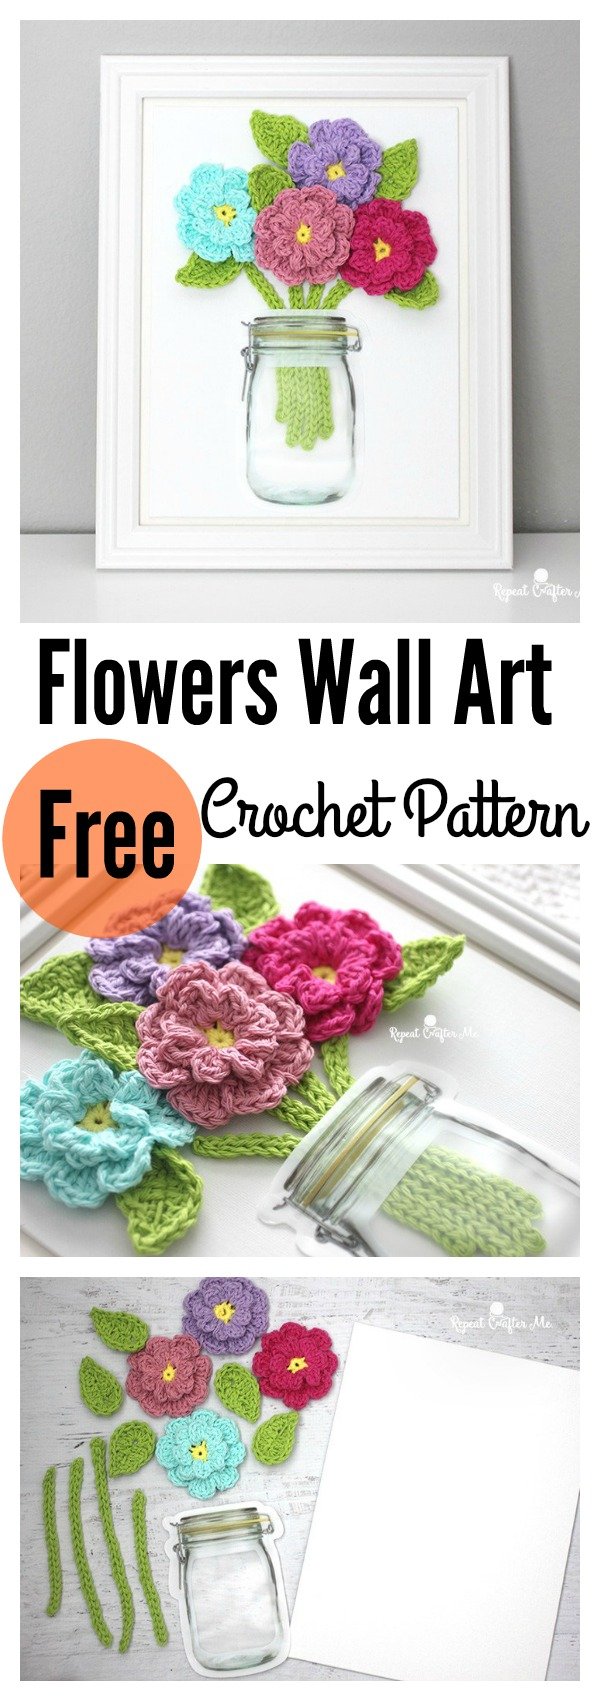 Crochet Flowers on Canvas Wall Art Free Pattern